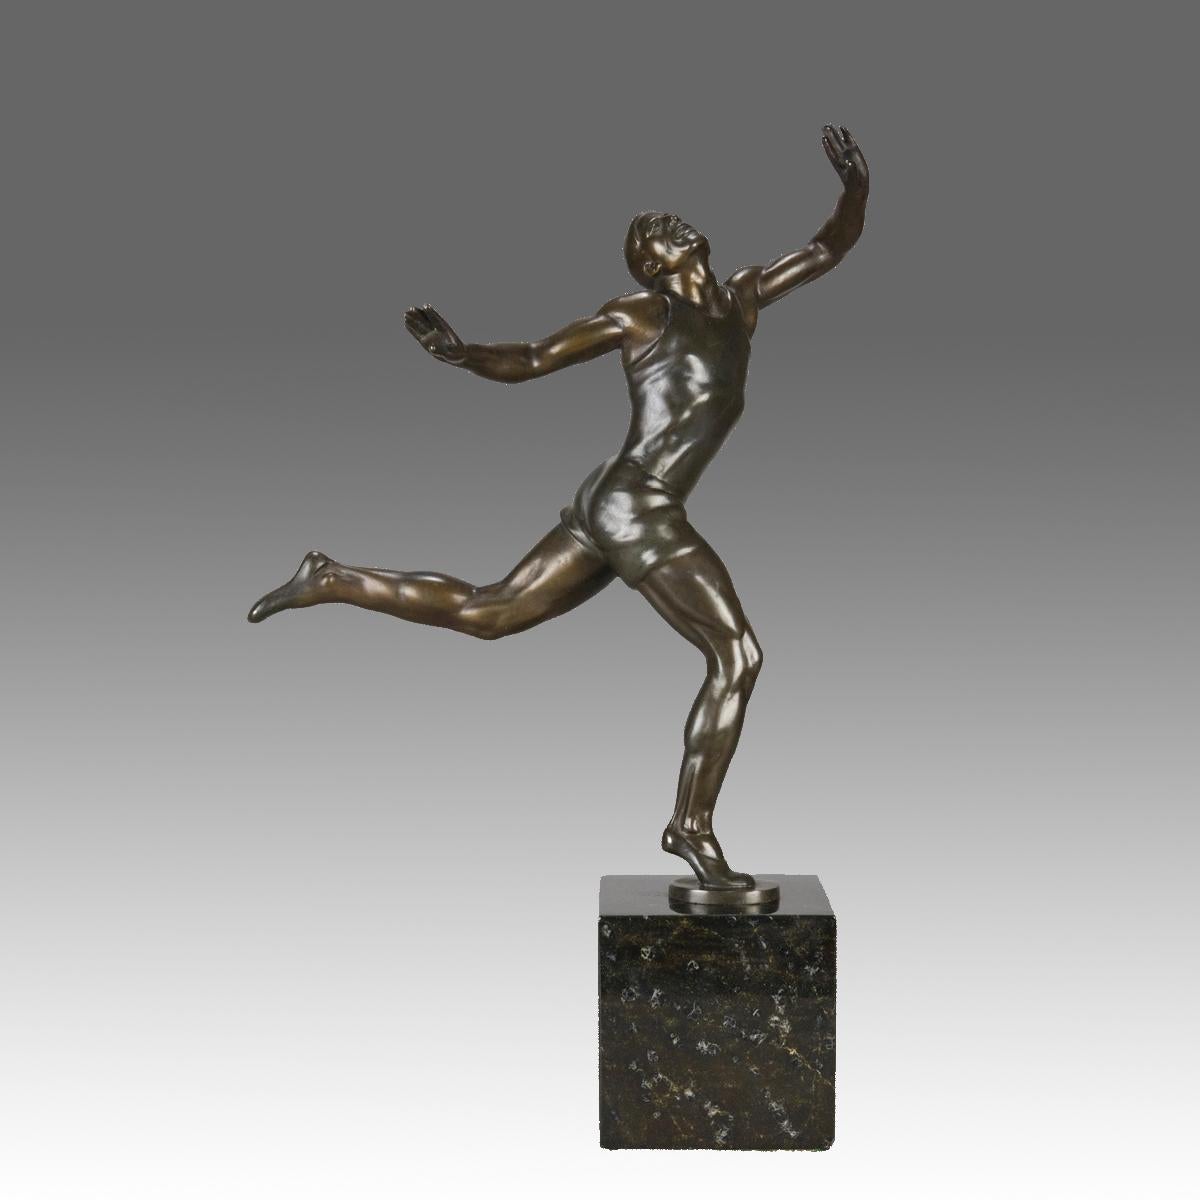 Eine sehr schöne Bronzestudie aus dem frühen 20. Jahrhundert, die einen muskulösen olympischen Athleten zeigt, der im Begriff ist, die Ziellinie zu überqueren. Die Bronze mit exzellenter, satter brauner Patina und sehr feinen, handgearbeiteten